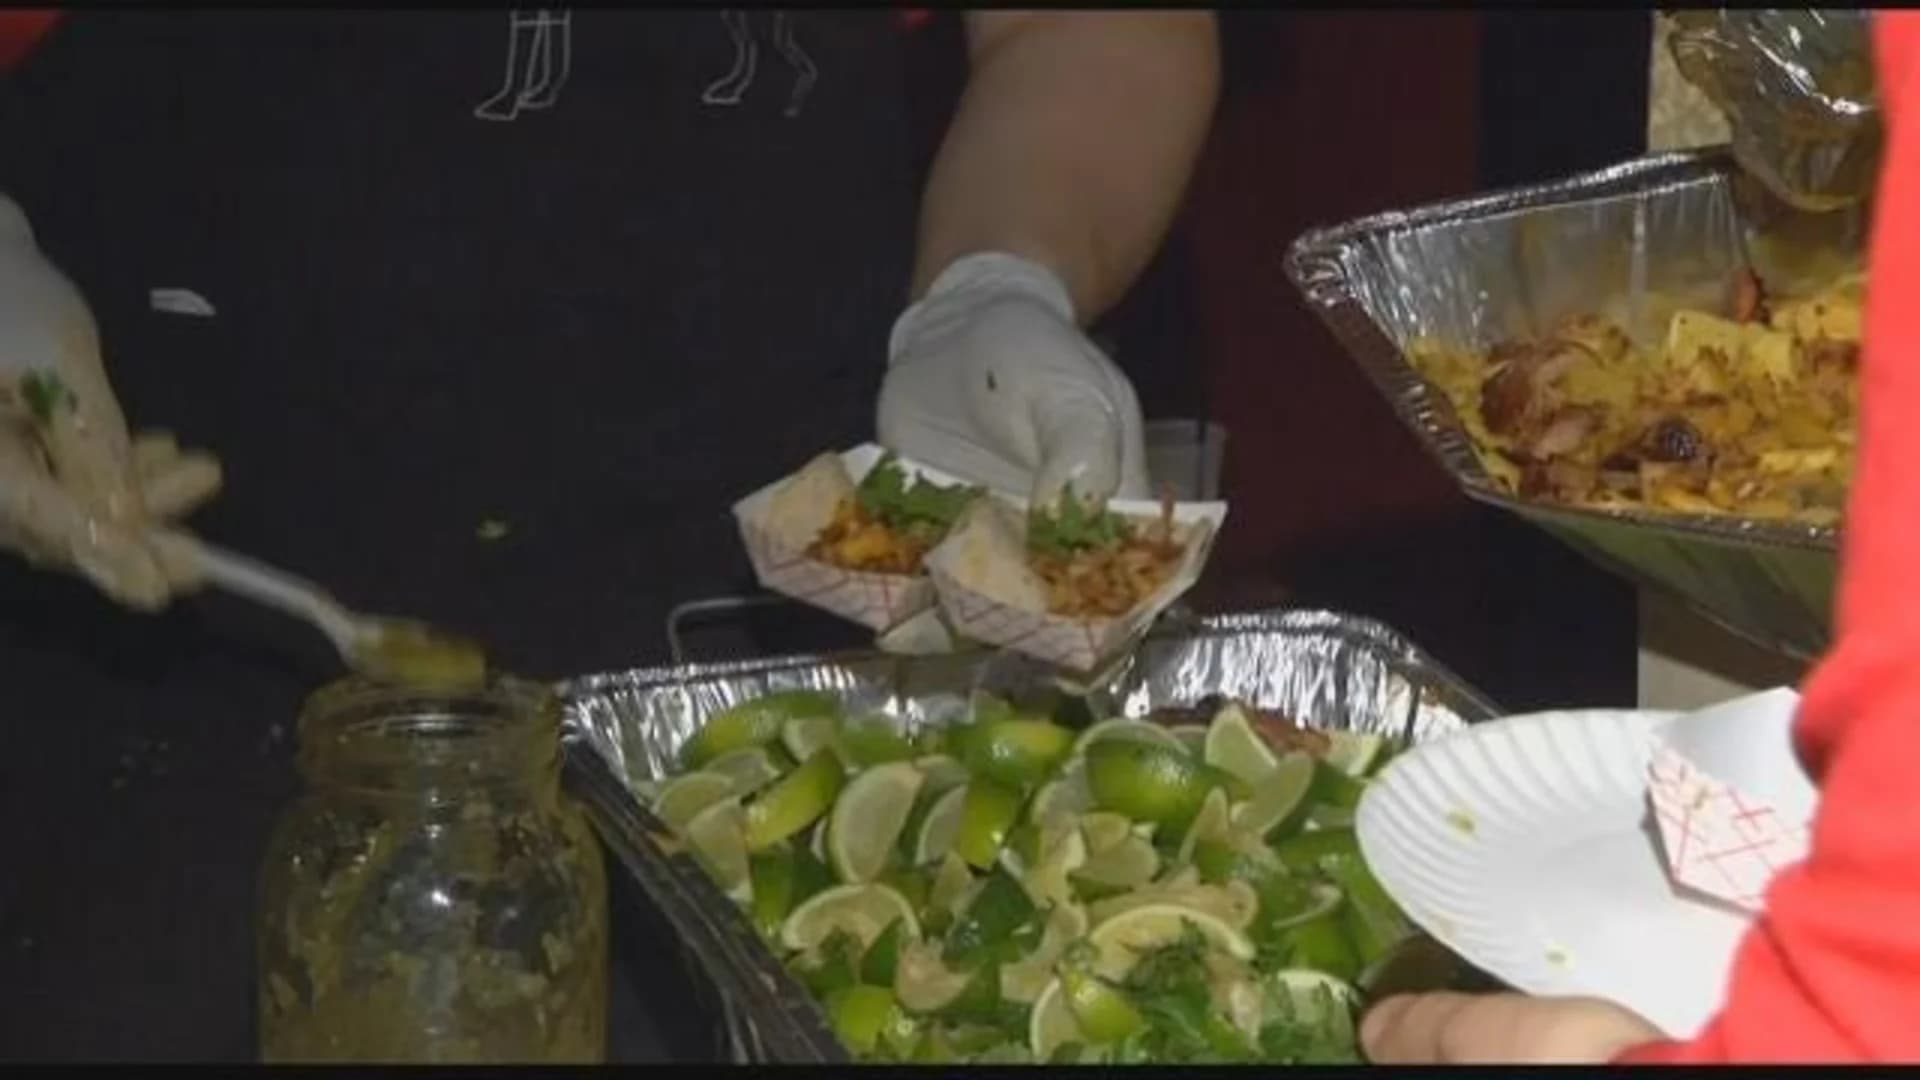 Food lovers enjoy tacos at Brooklyn Bazaar